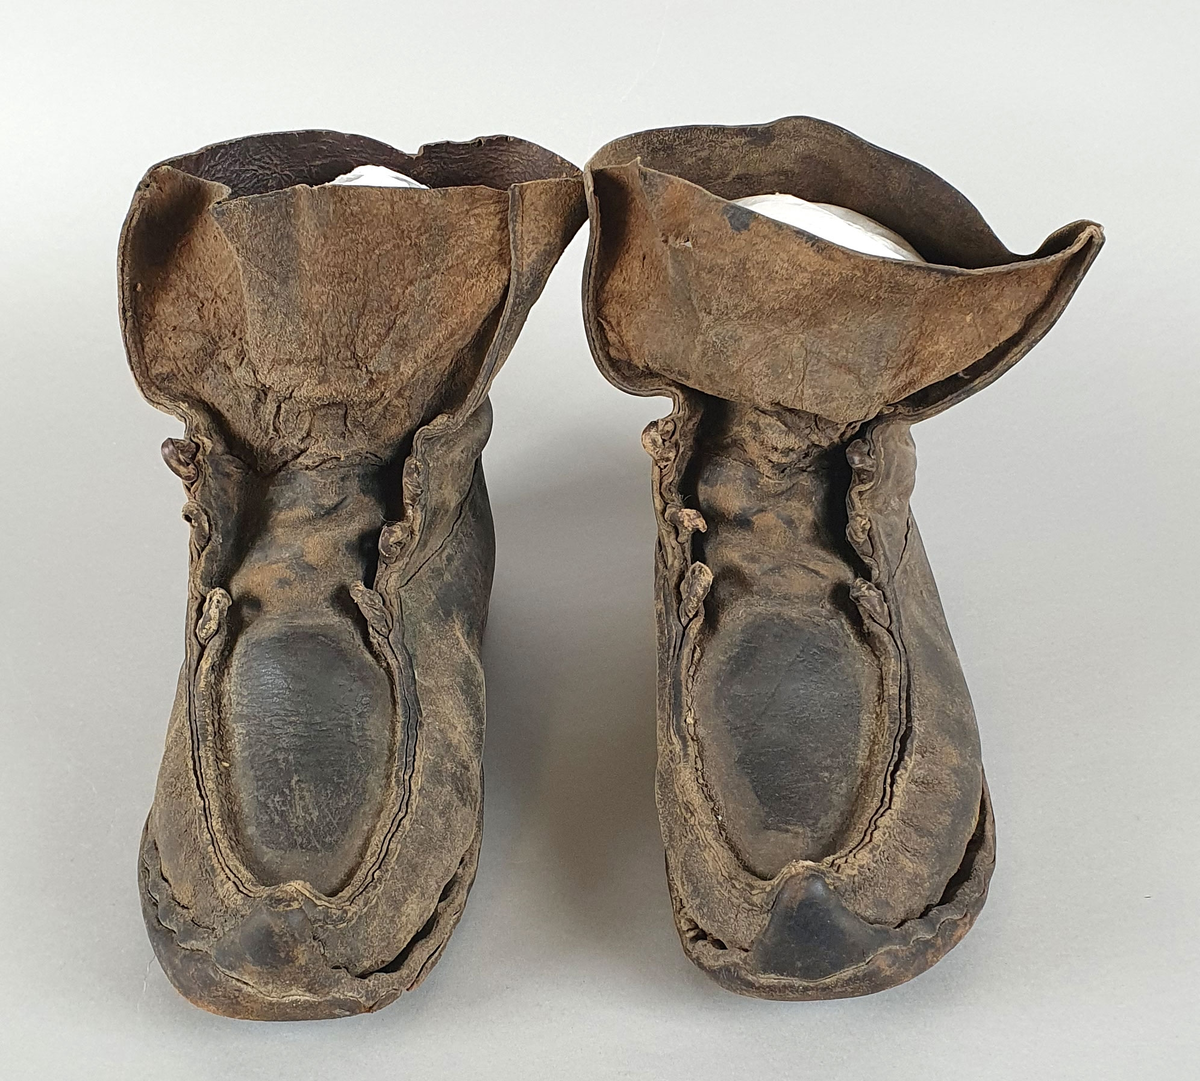 Et par støvler av skinn. Skinnet er sydd sammen på framsidene. Støvlene er påsatt halvsåle av lær og hæl av lær og gummi.